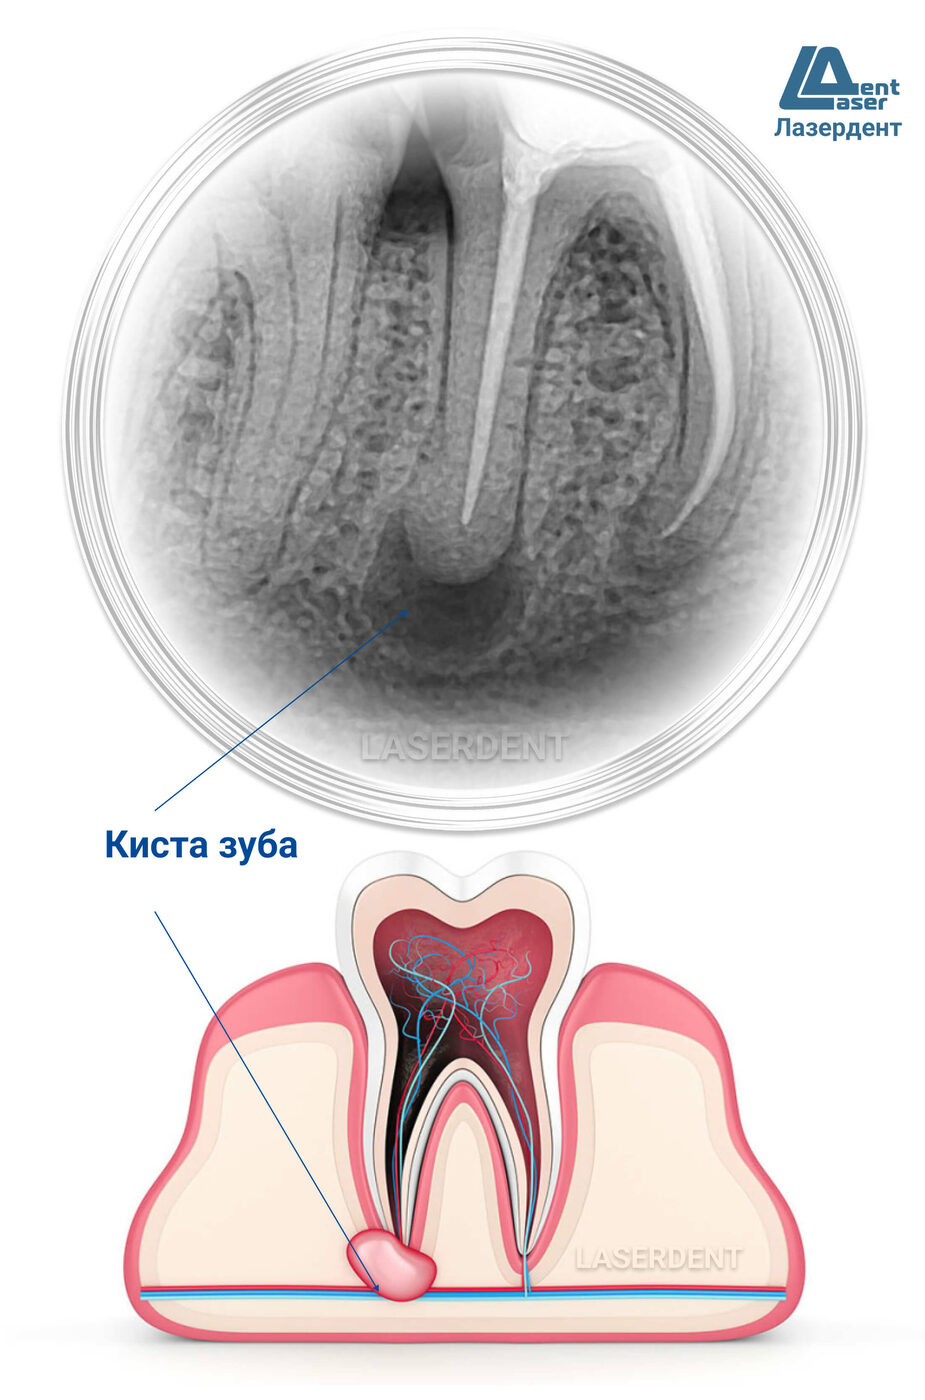 Киста зуба: лечение народными средствами в домашних условиях